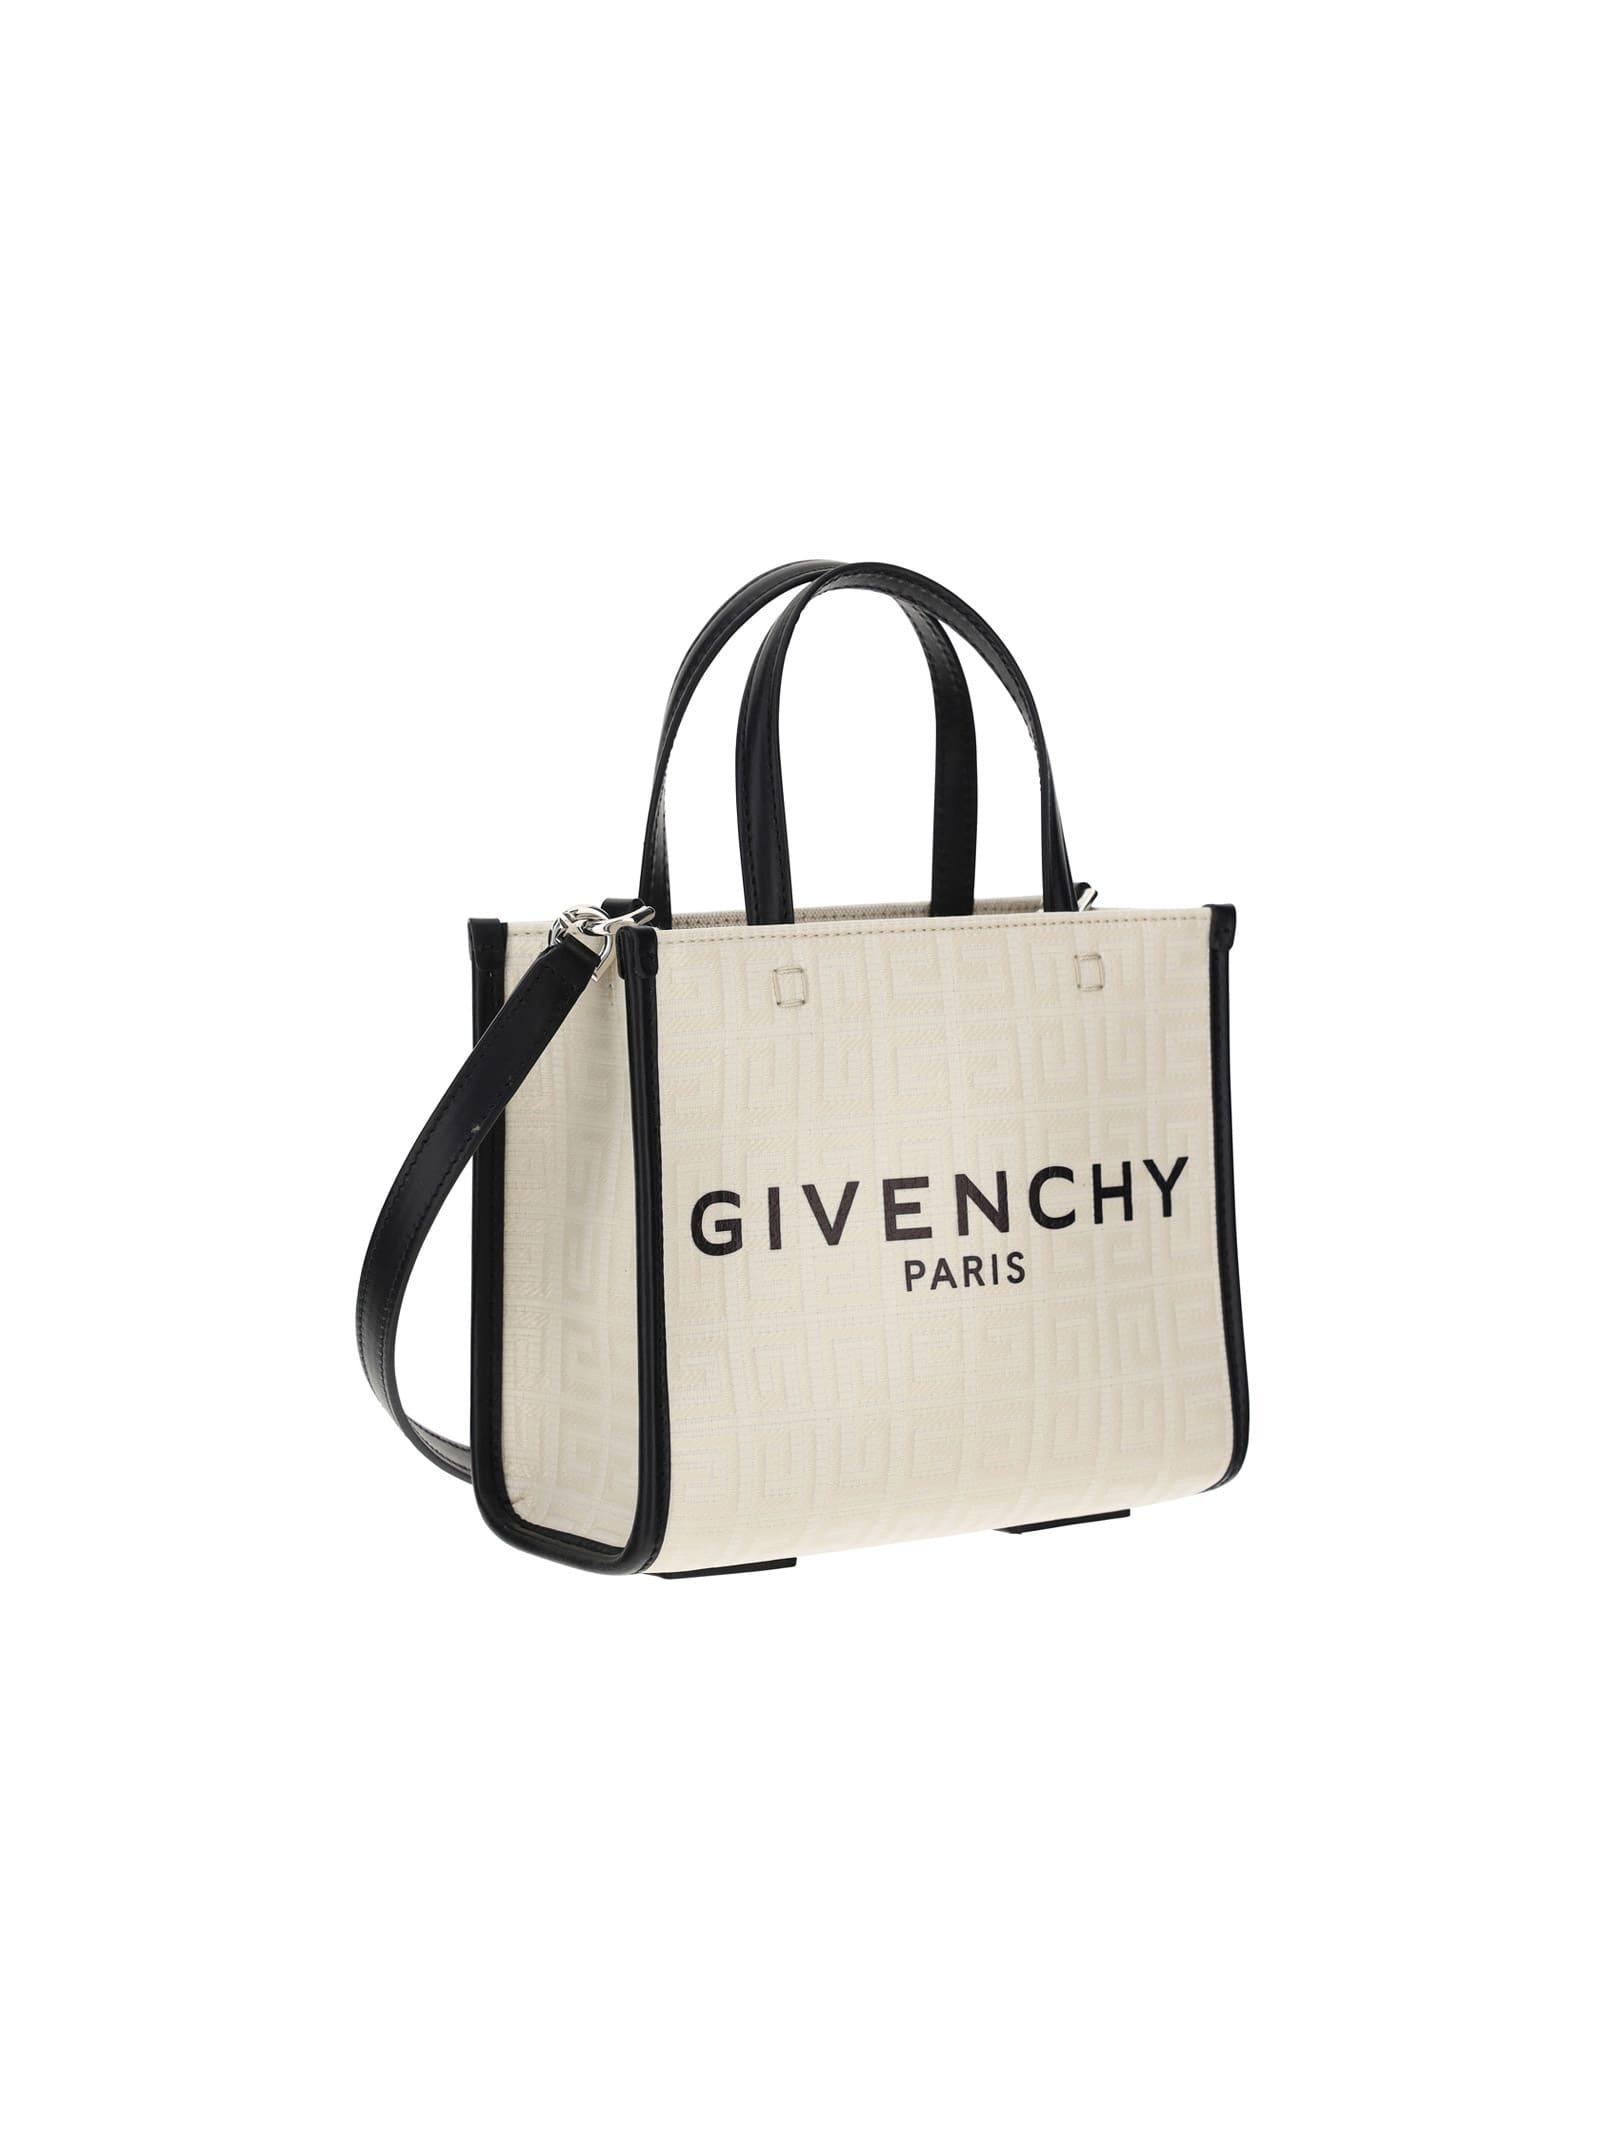 Givenchy 'G' Mini Tote Bag